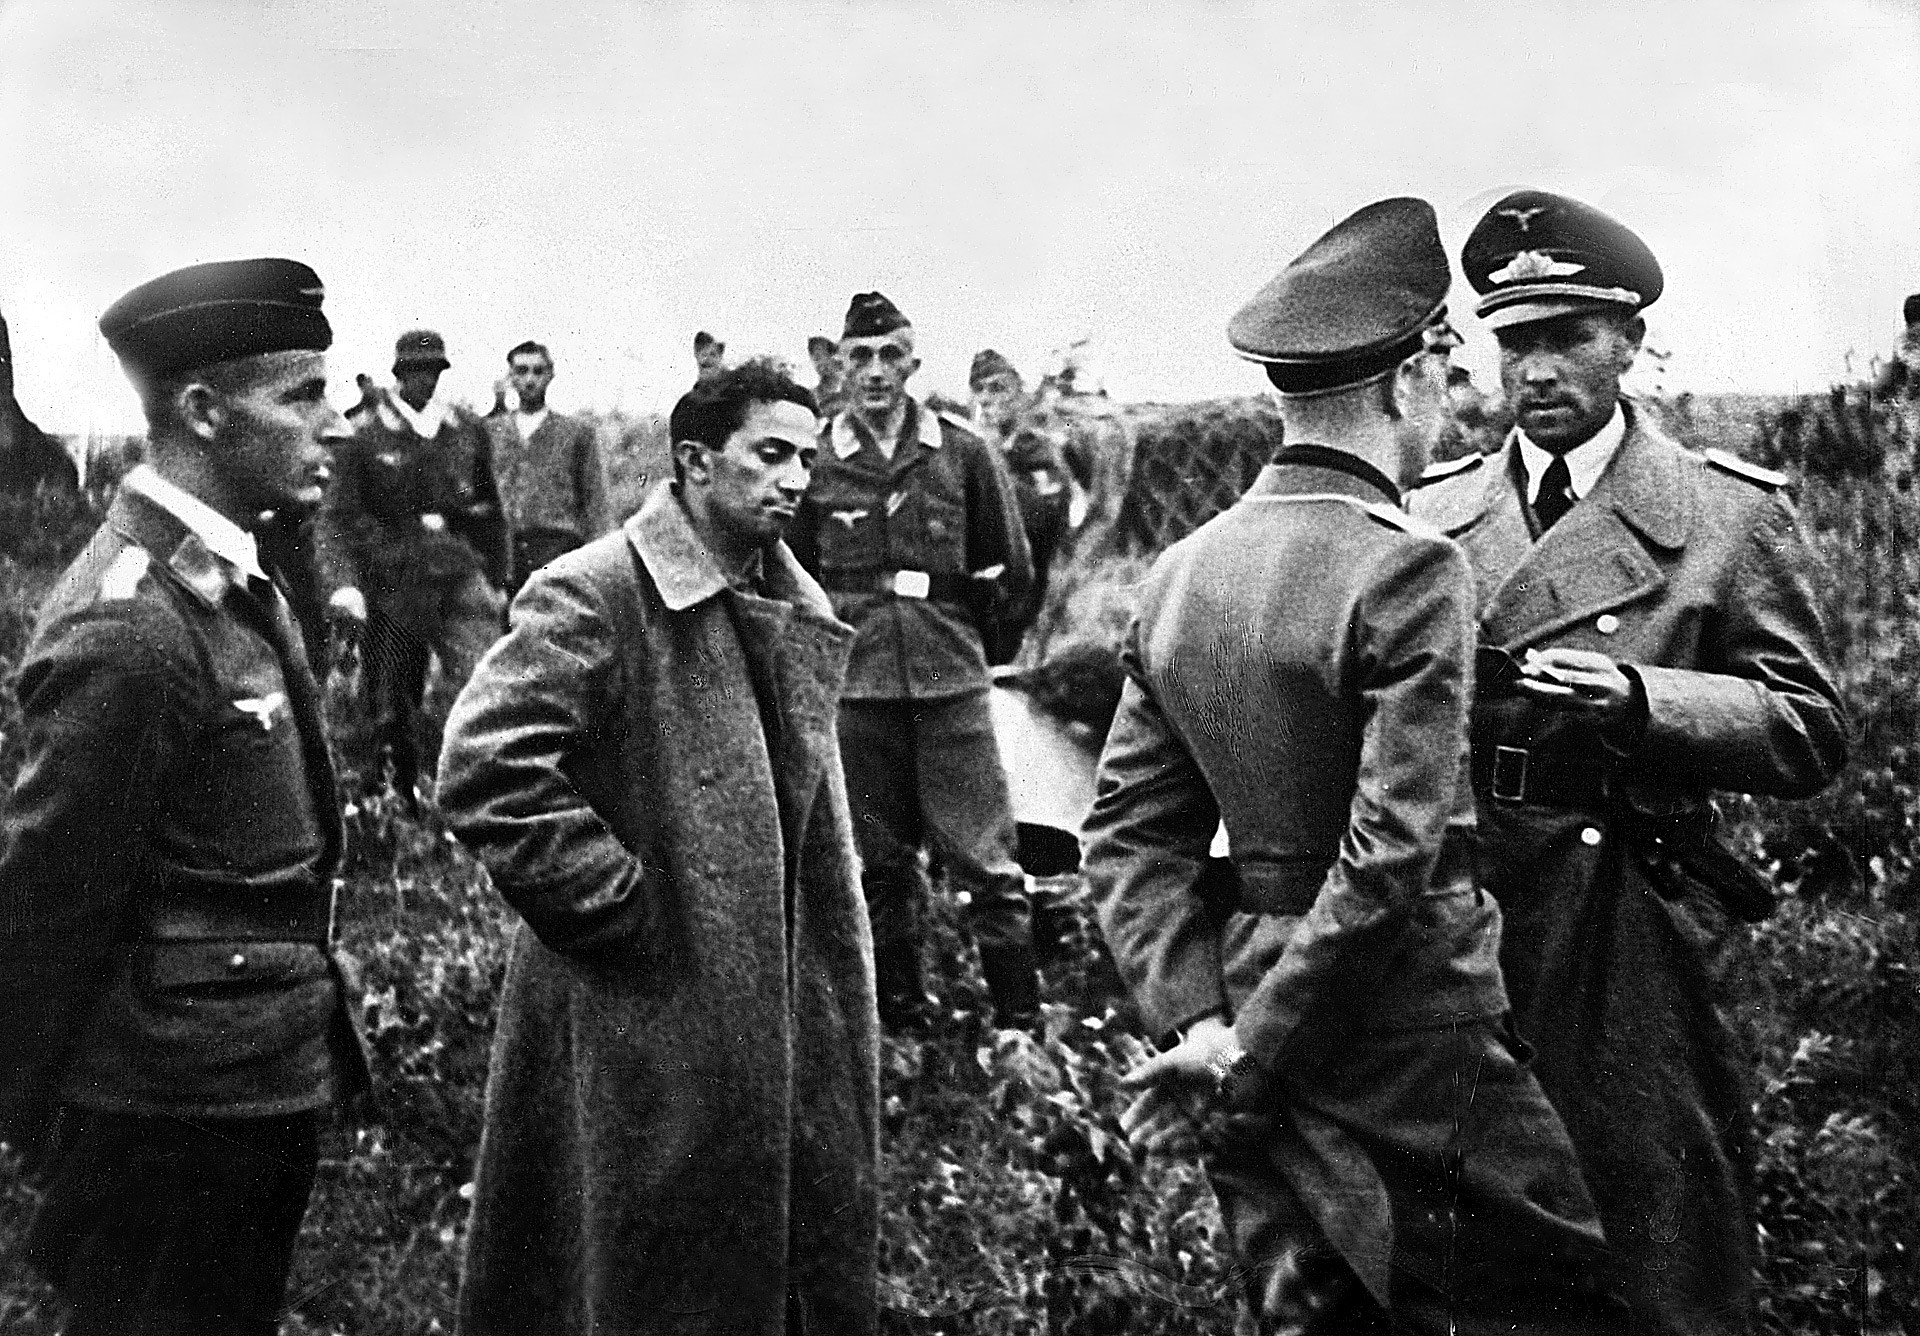 Првог Стљиновог сина Јакова Џугашвилија су заробили Немци. Није се вратио жив из заробљеништва. На слици је окружен немачким официрима.